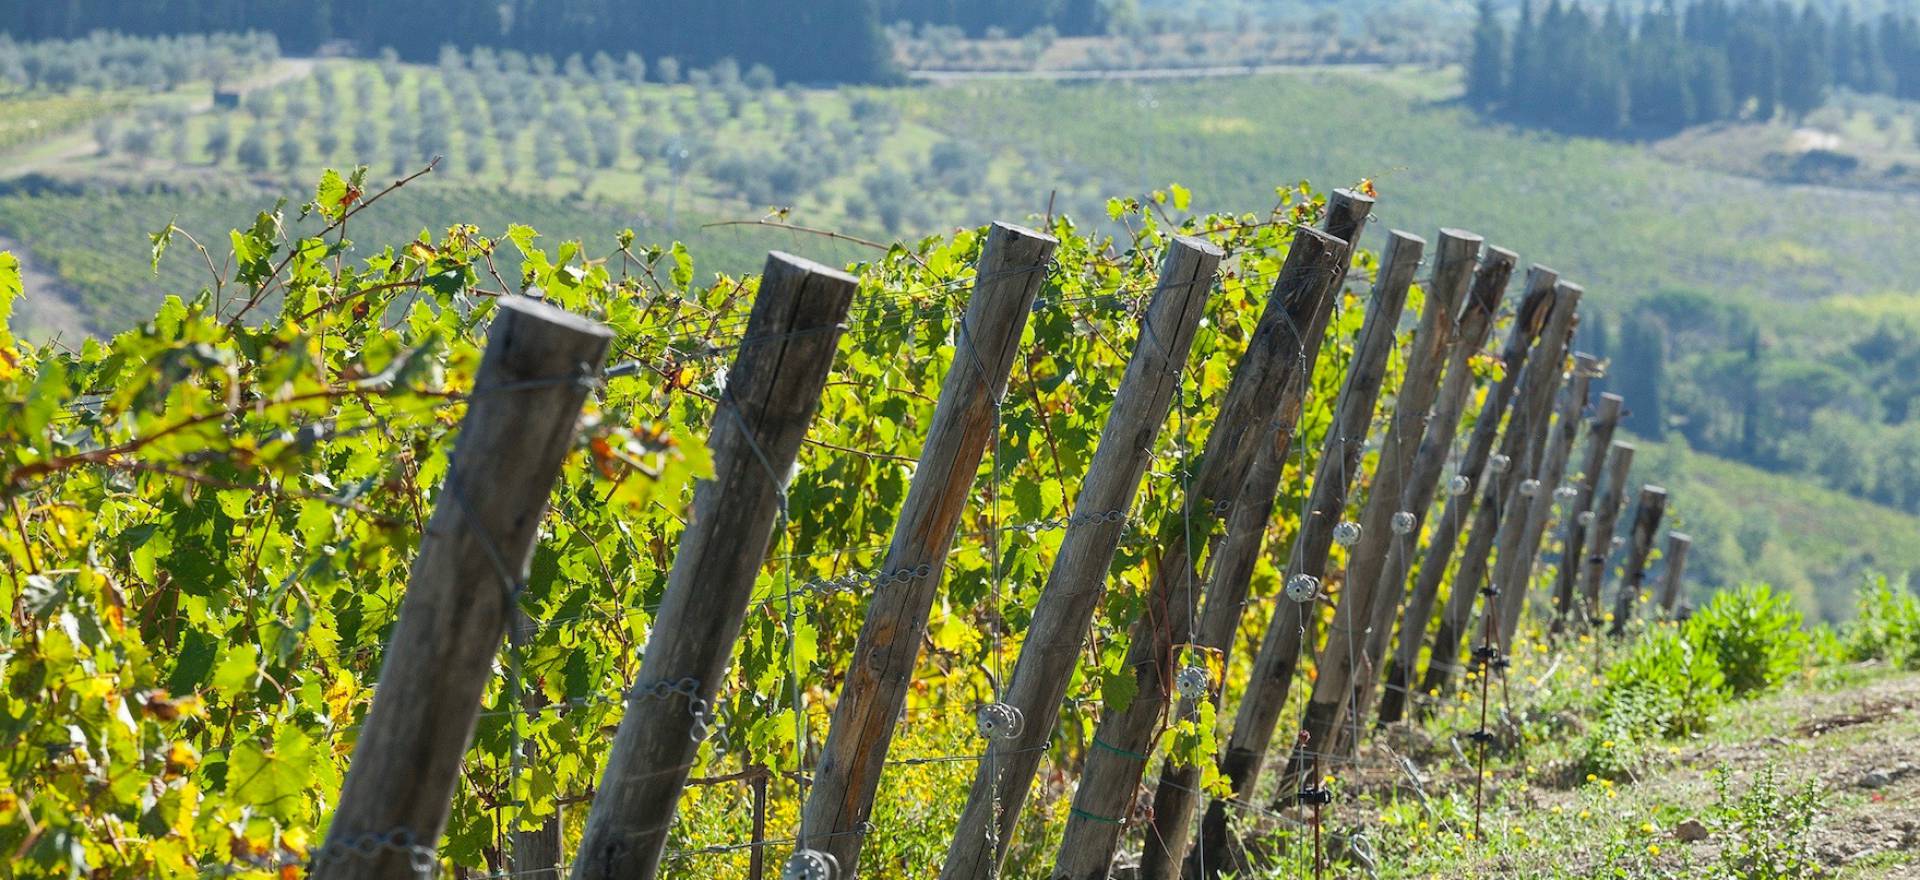 Agriturismo Tuscany Agriturismo surrounded by vineyards near Florence, Tuscany